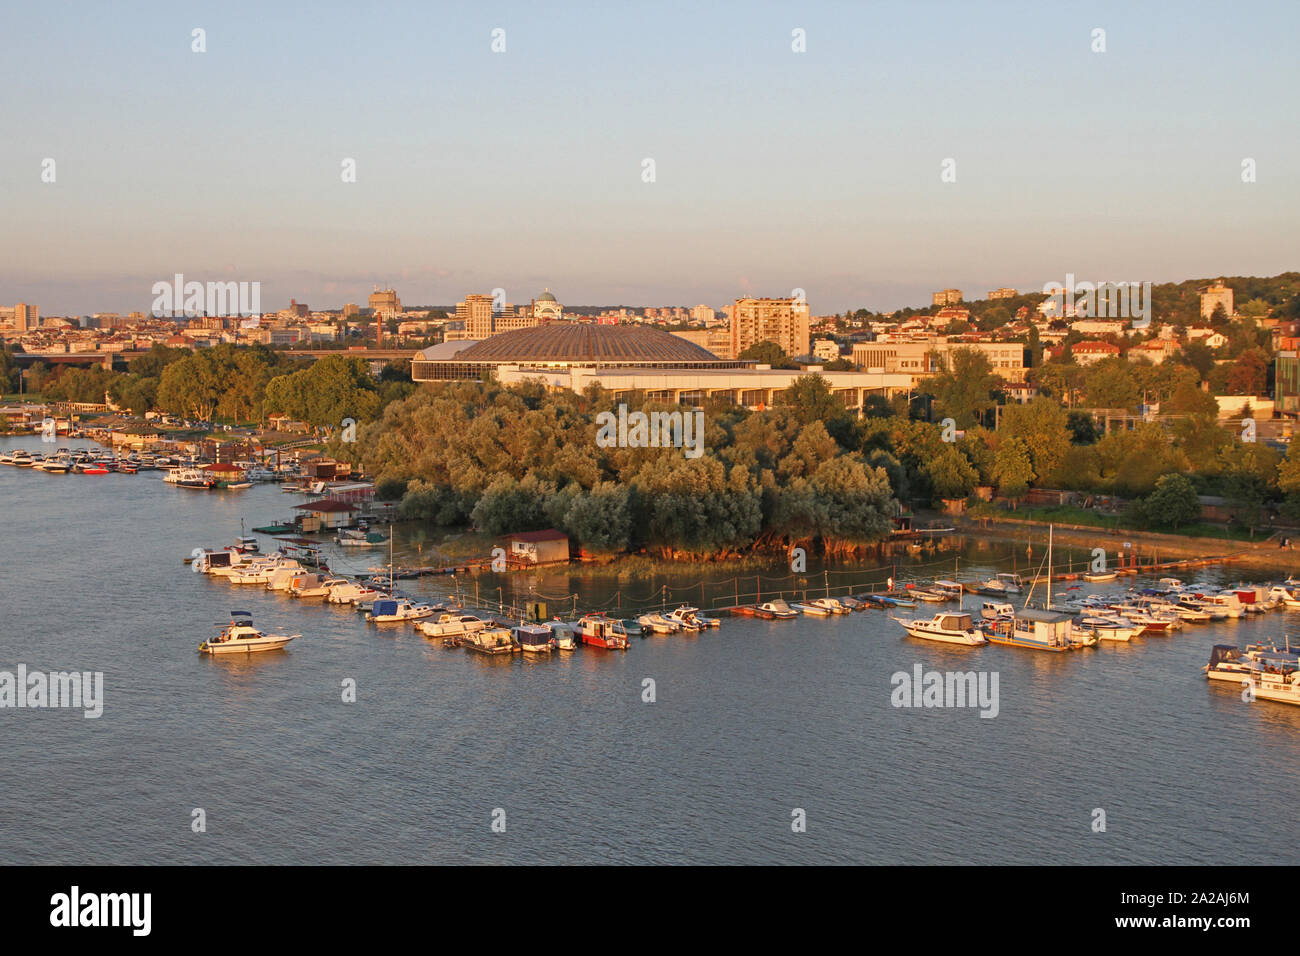 Blick auf sajam Messe und Hafen in der Nähe der Ada-Brücke über den Fluss Sava, Belgrad, Serbien. Stockfoto